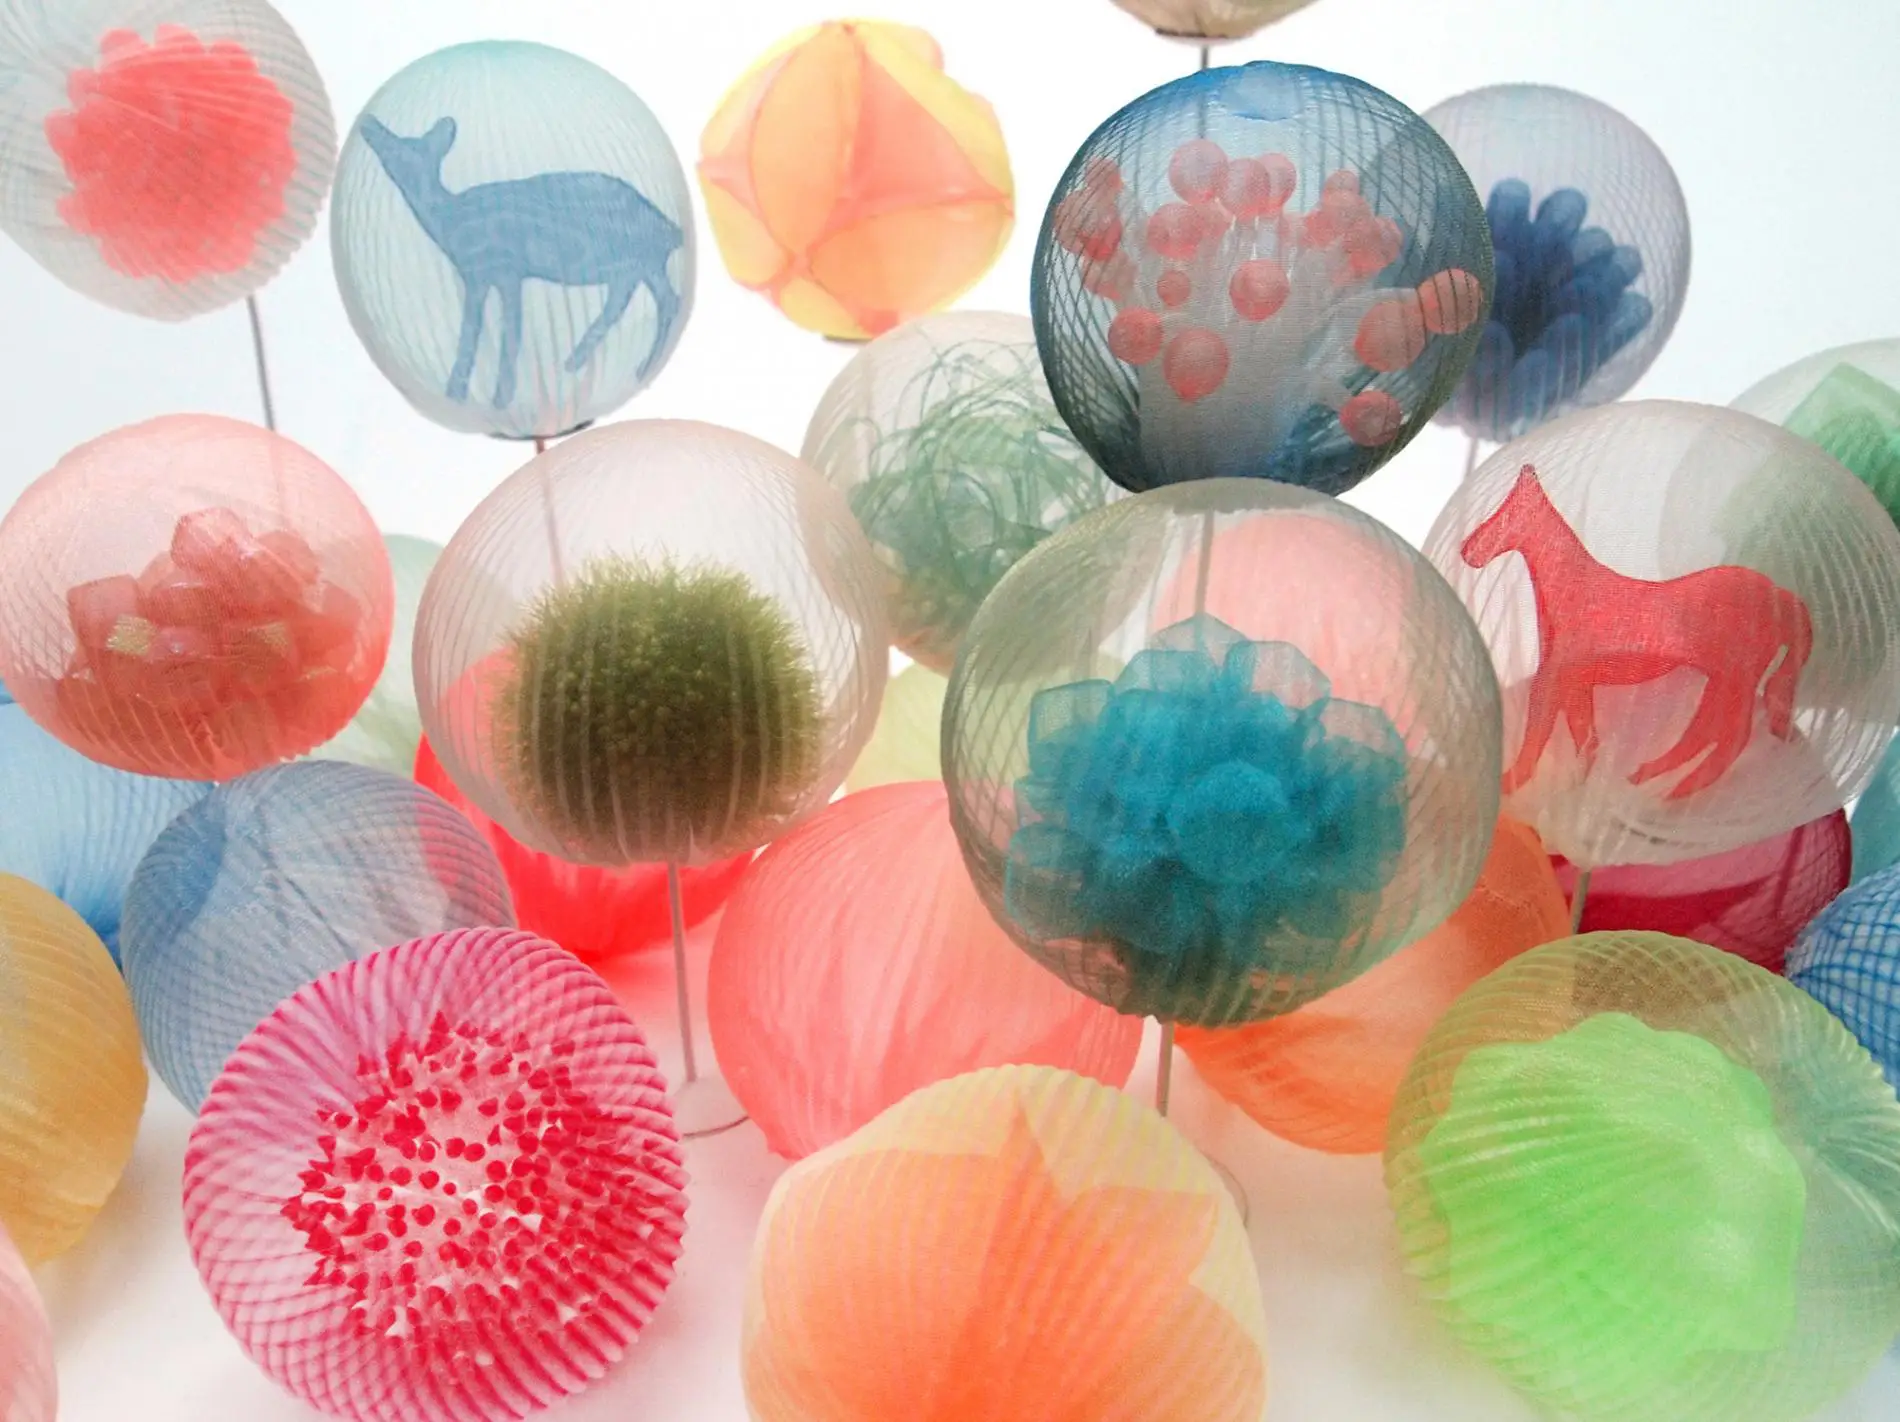 kusumoto textiles traslucidos bolas